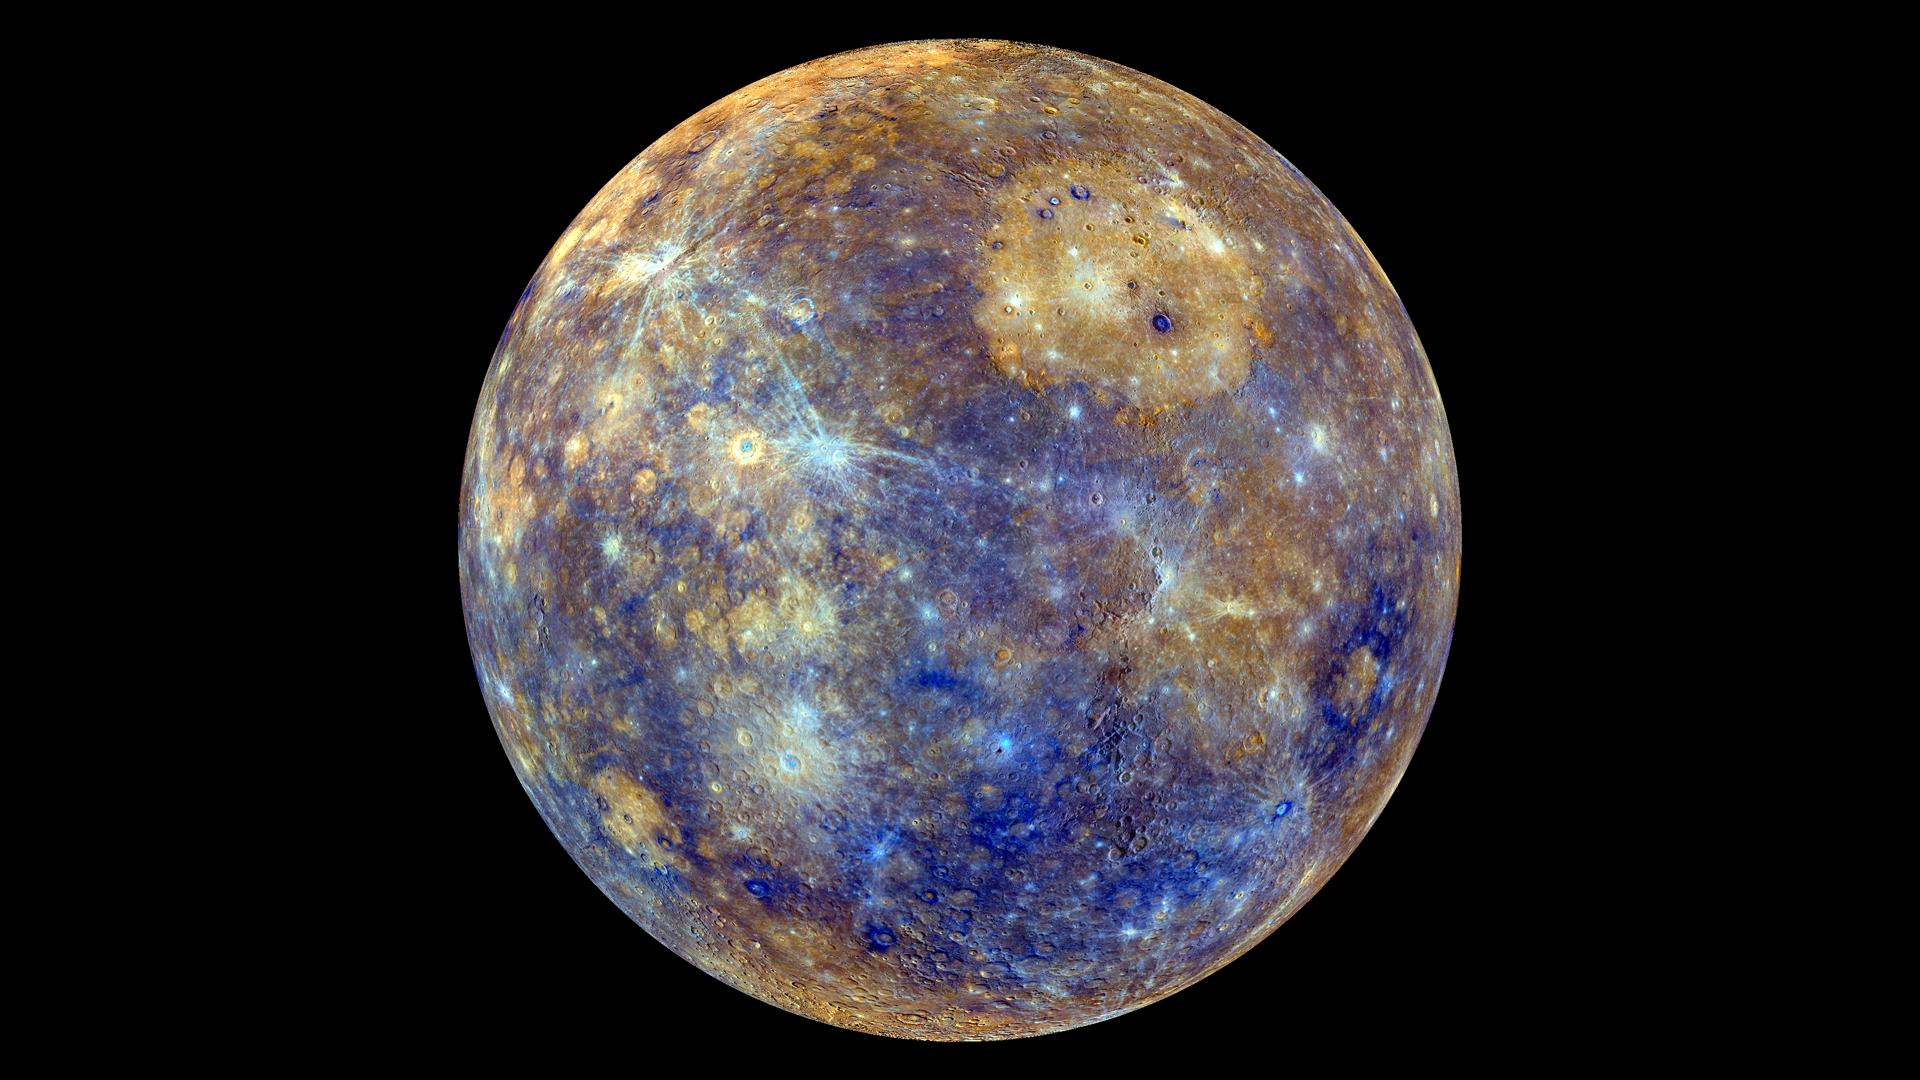 mercurio pianeta spazio sonda italiana bepicolombo esa agenzia spaziale europea foto universo spazio stelle